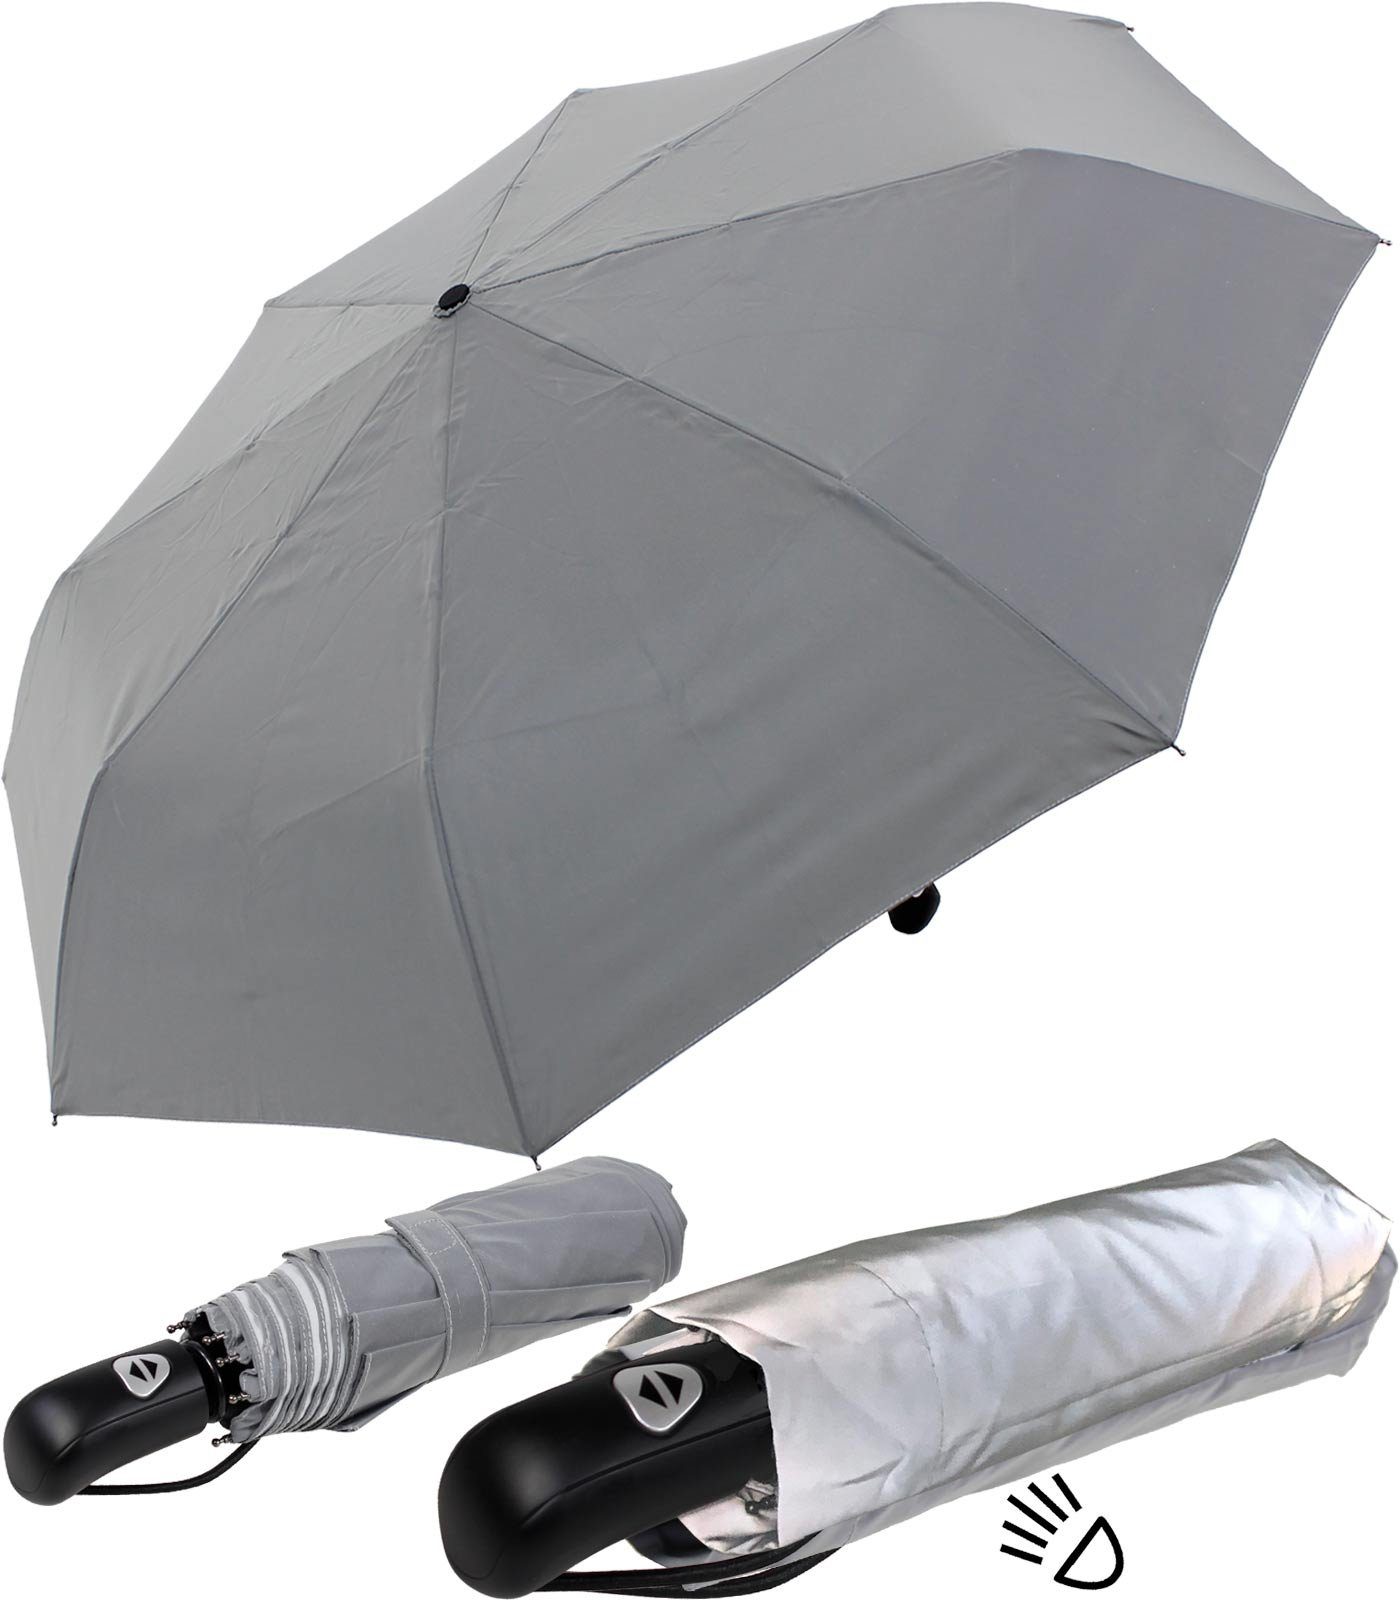 Taschenregenschirm Material Dach das ganze besteht aus Automatik, Class mit iX-brella stabiler Regenschirm First reflektierenden einem stark